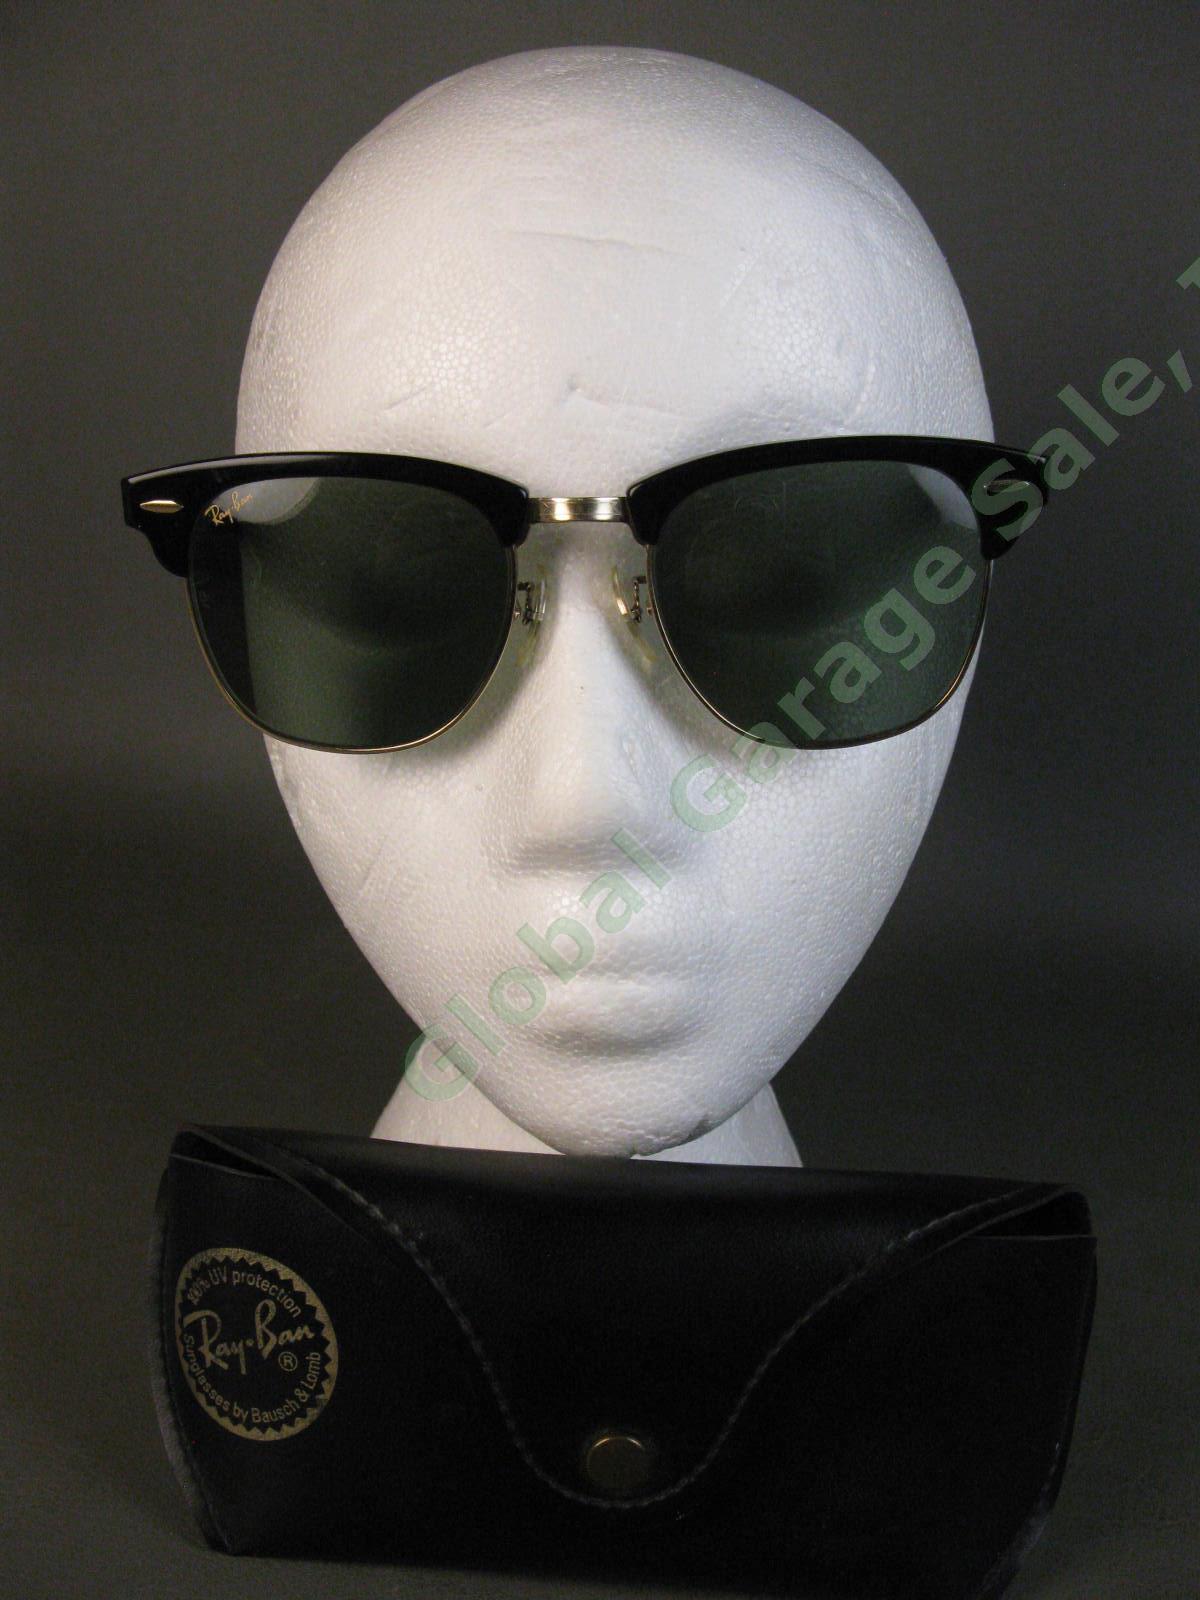 VTG B&L Ray-Ban ClubMaster Sunglasses Arista Ebony W1115 G15 RB3016 Bausch Lomb